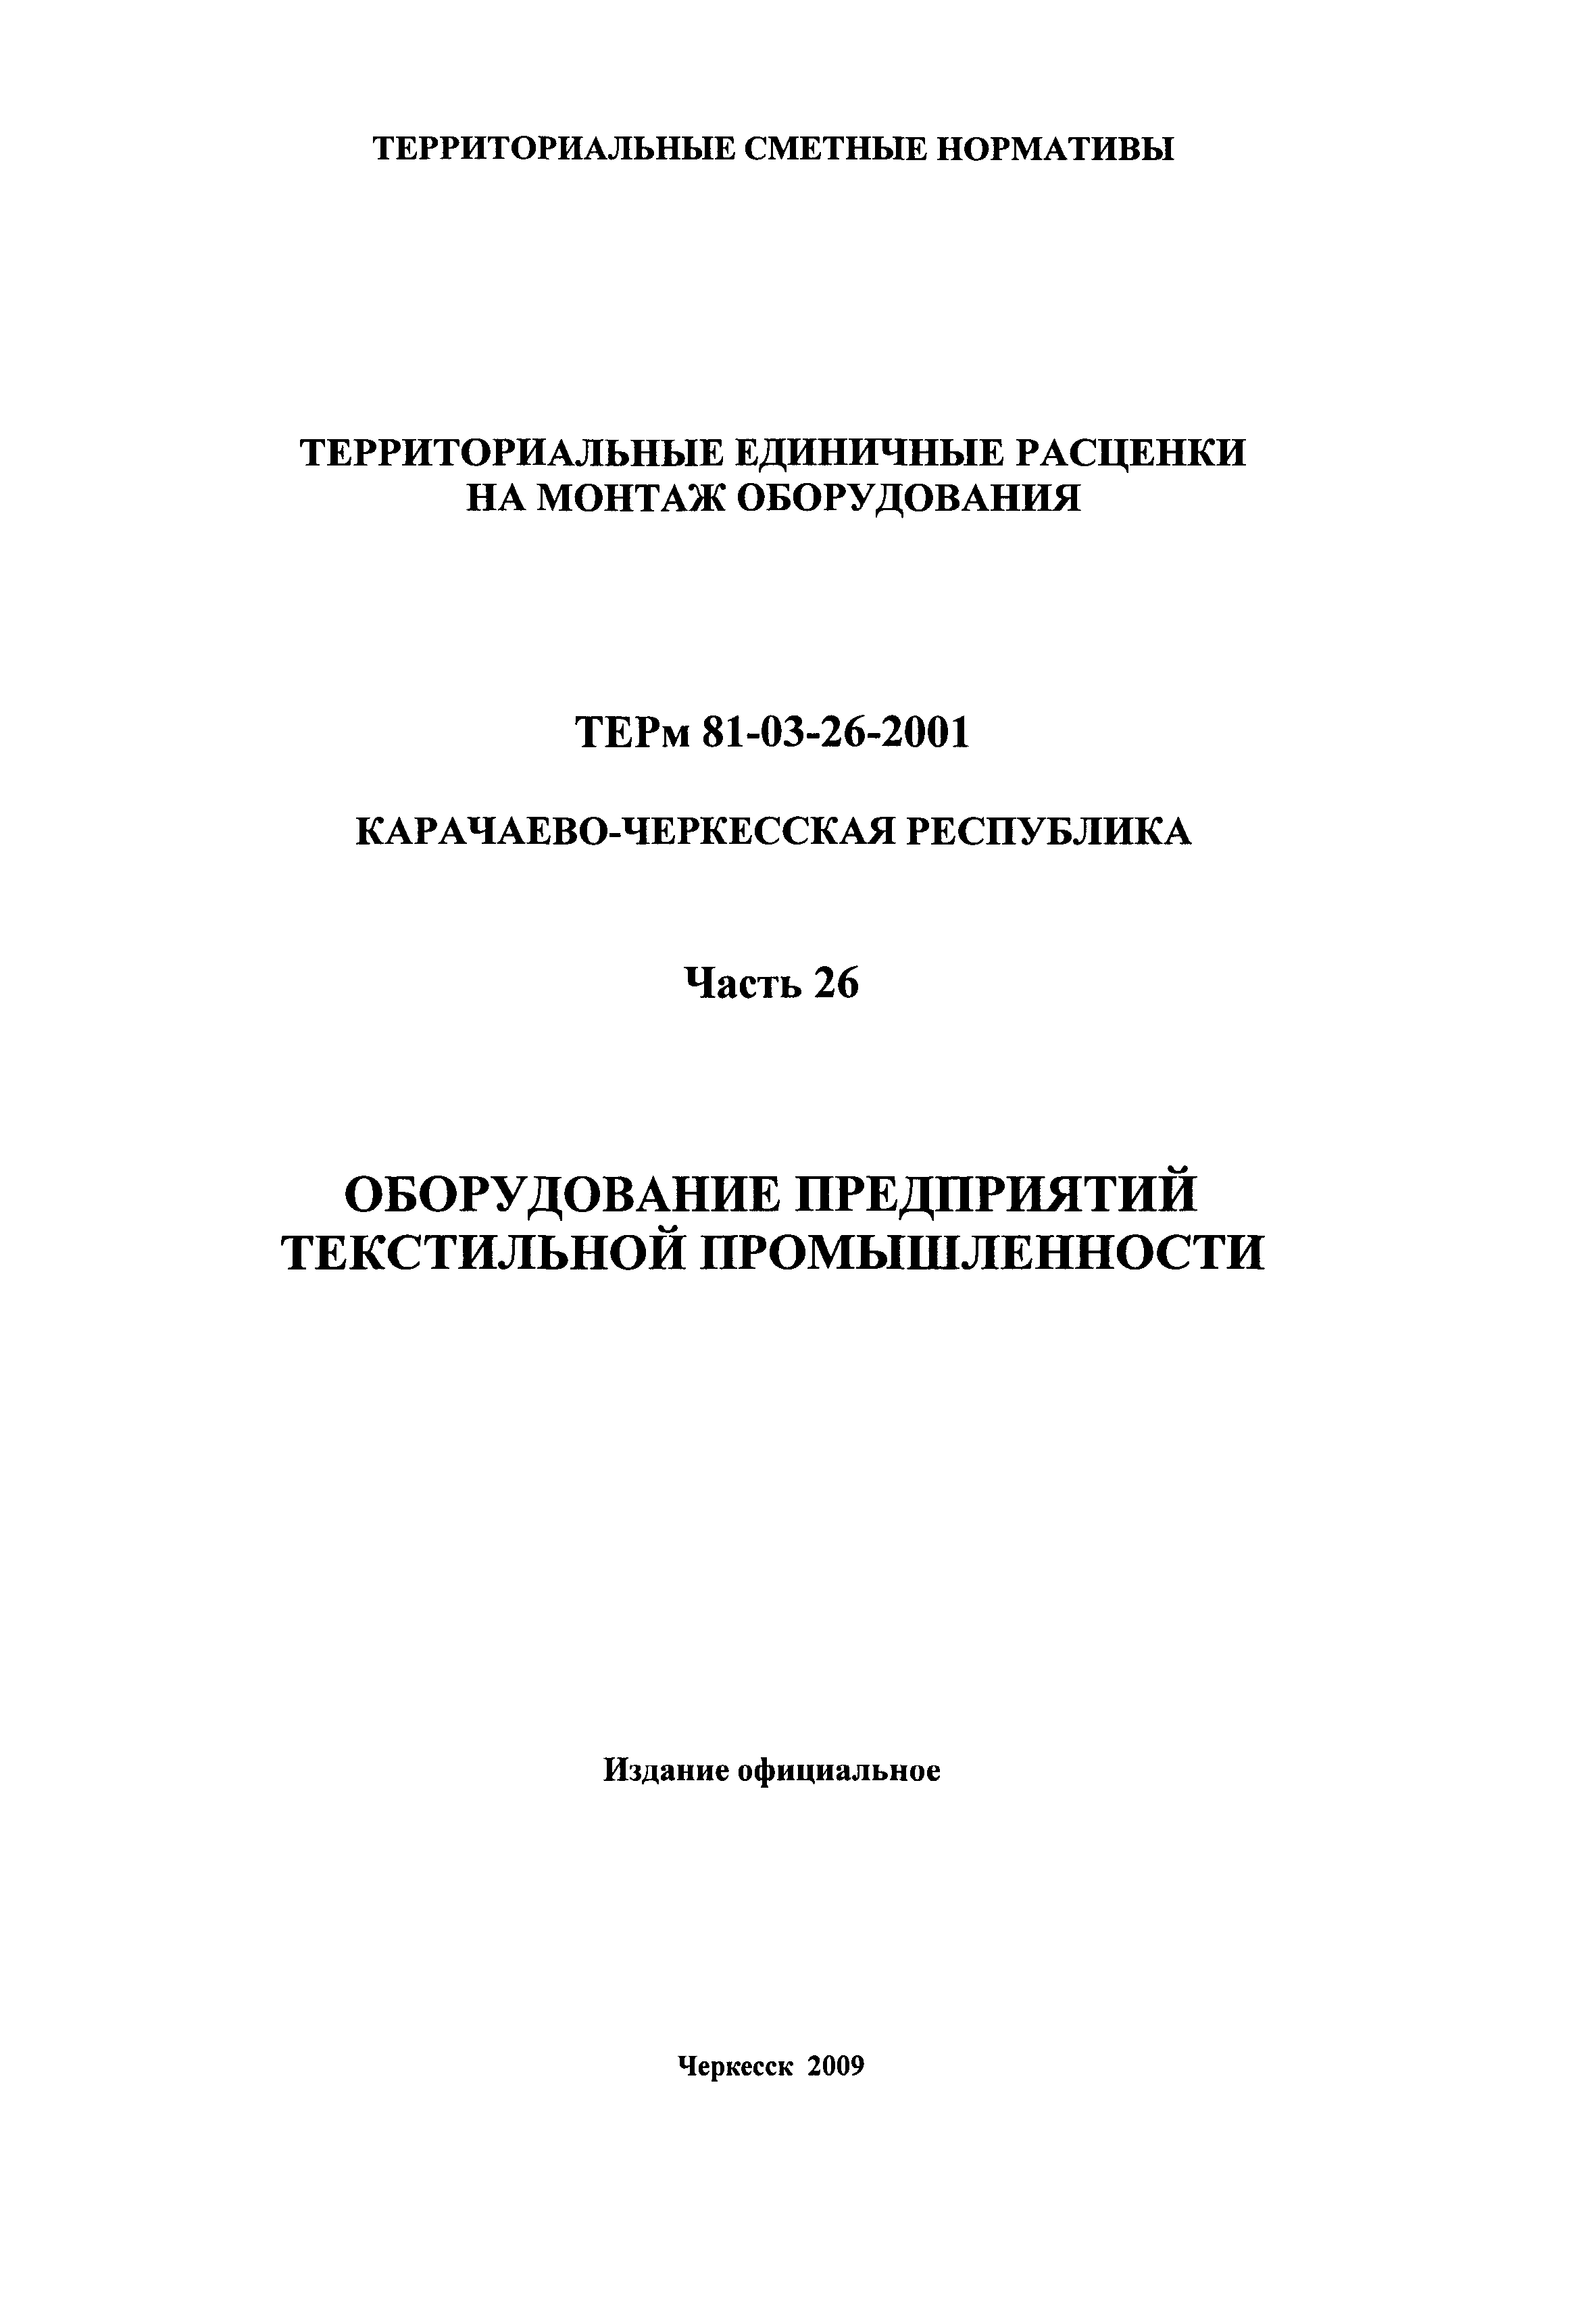 ТЕРм Карачаево-Черкесская Республика 26-2001